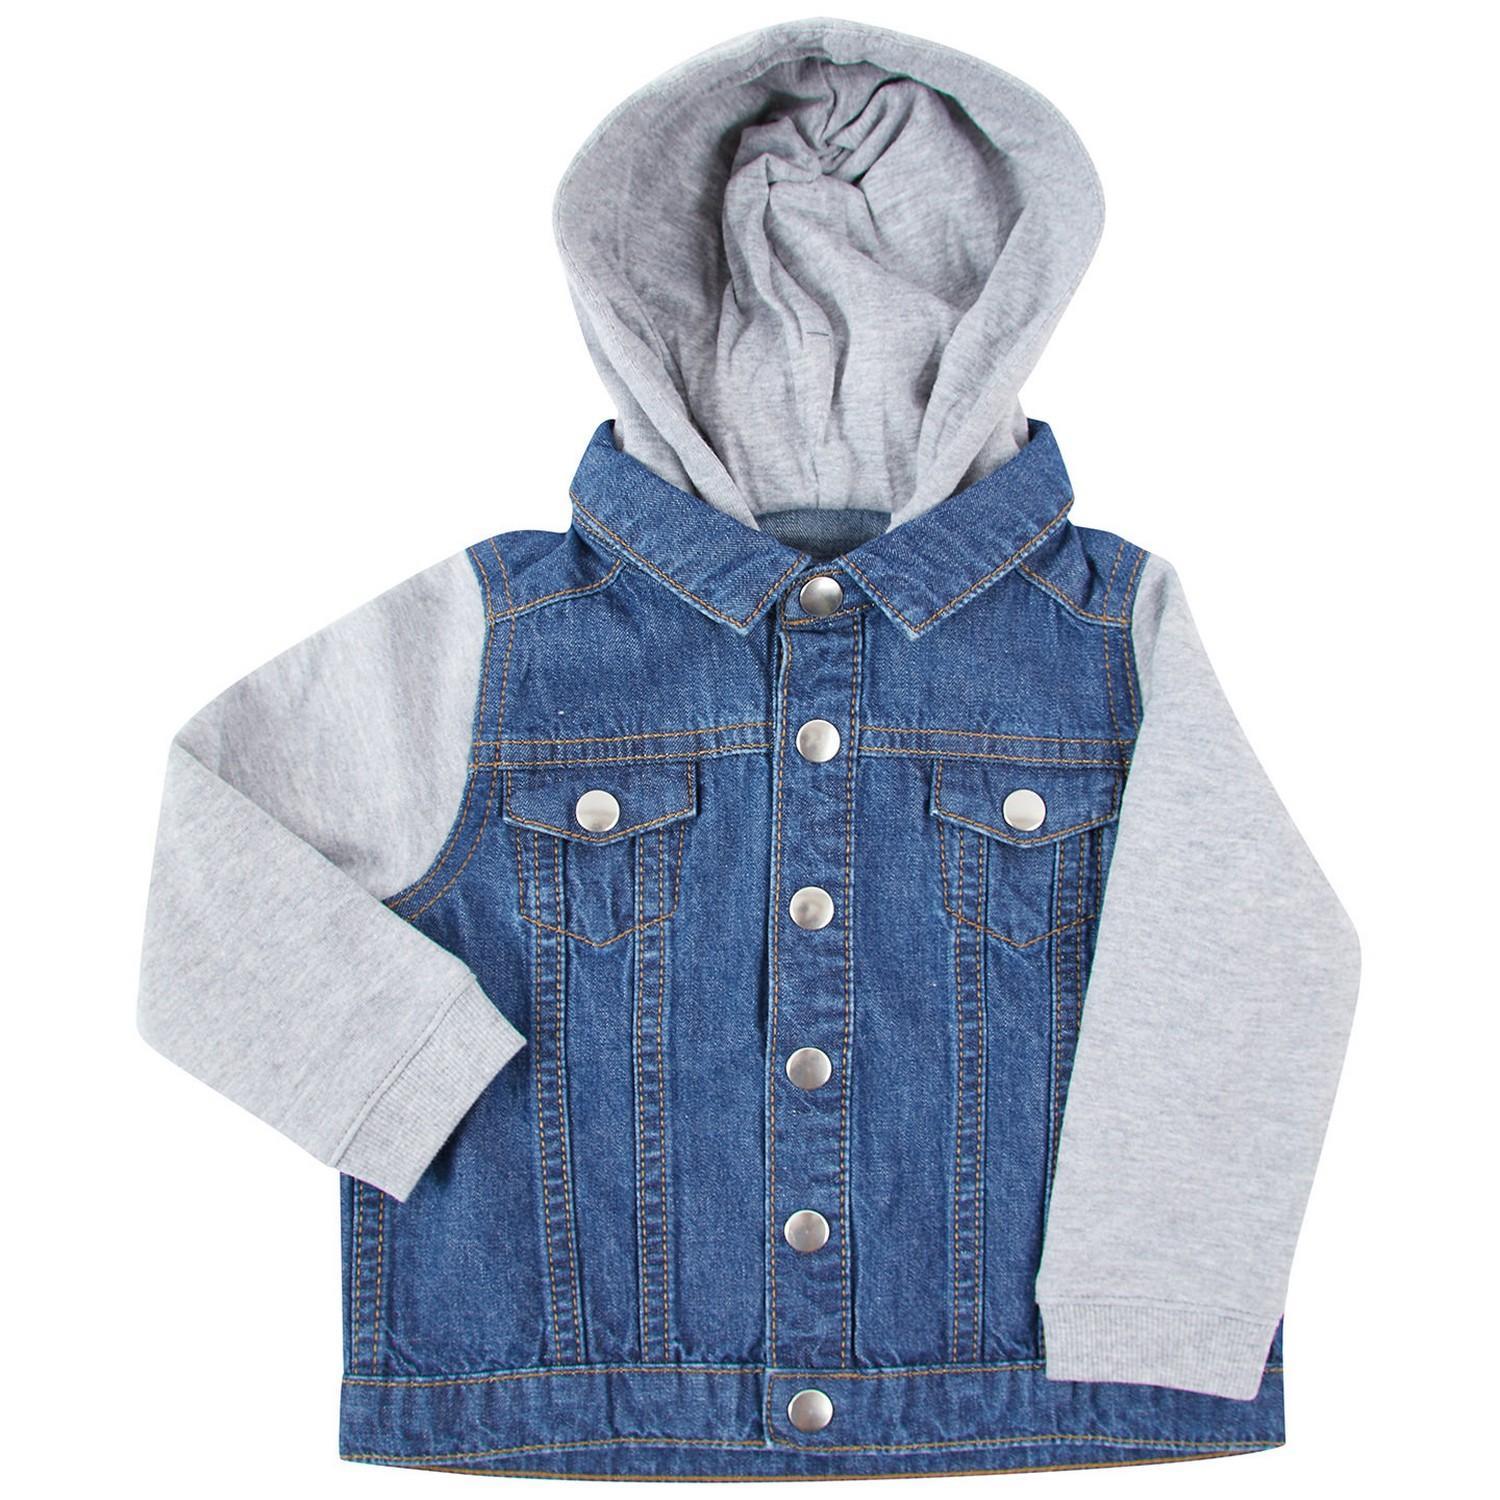 Larkwood Childrens/Kids Denim Jacket (Blue) (18-24 Months)